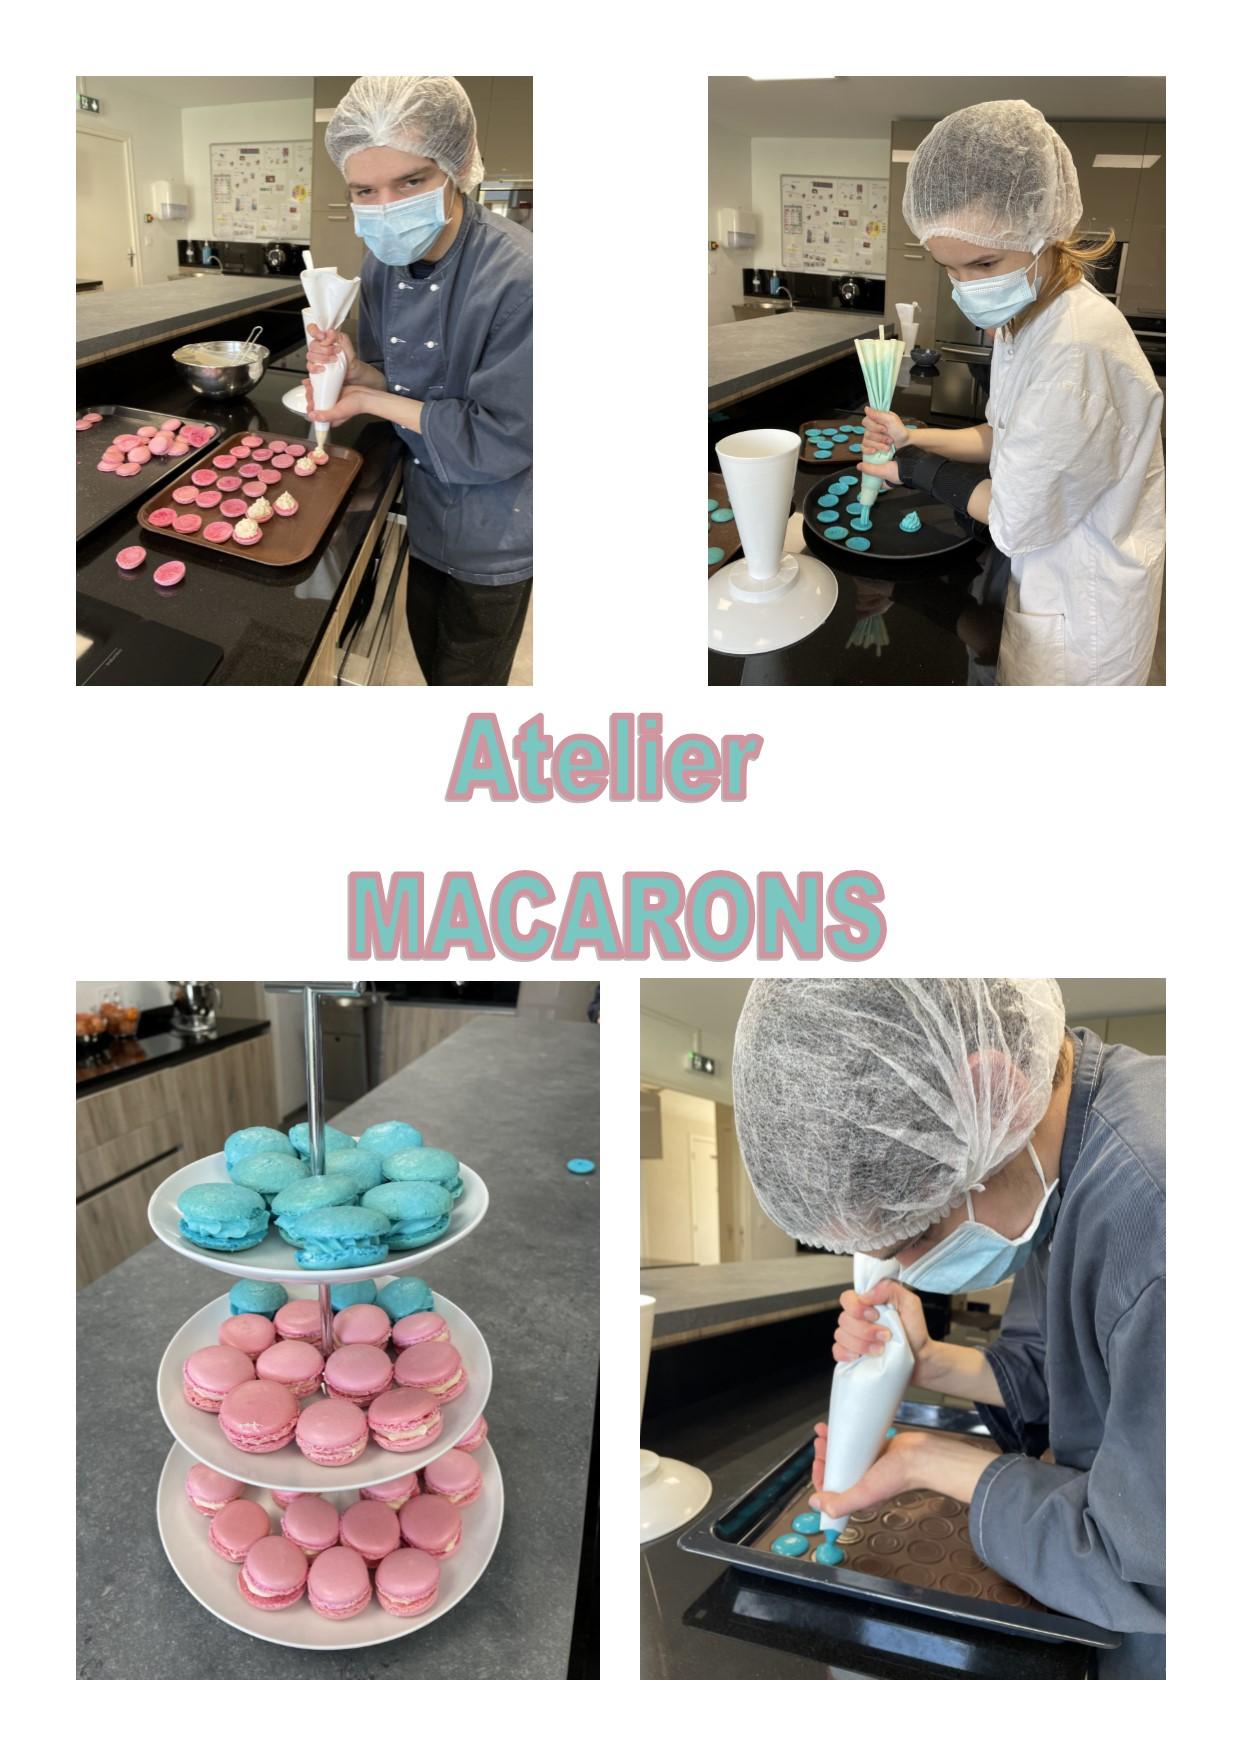 Atelier macarons